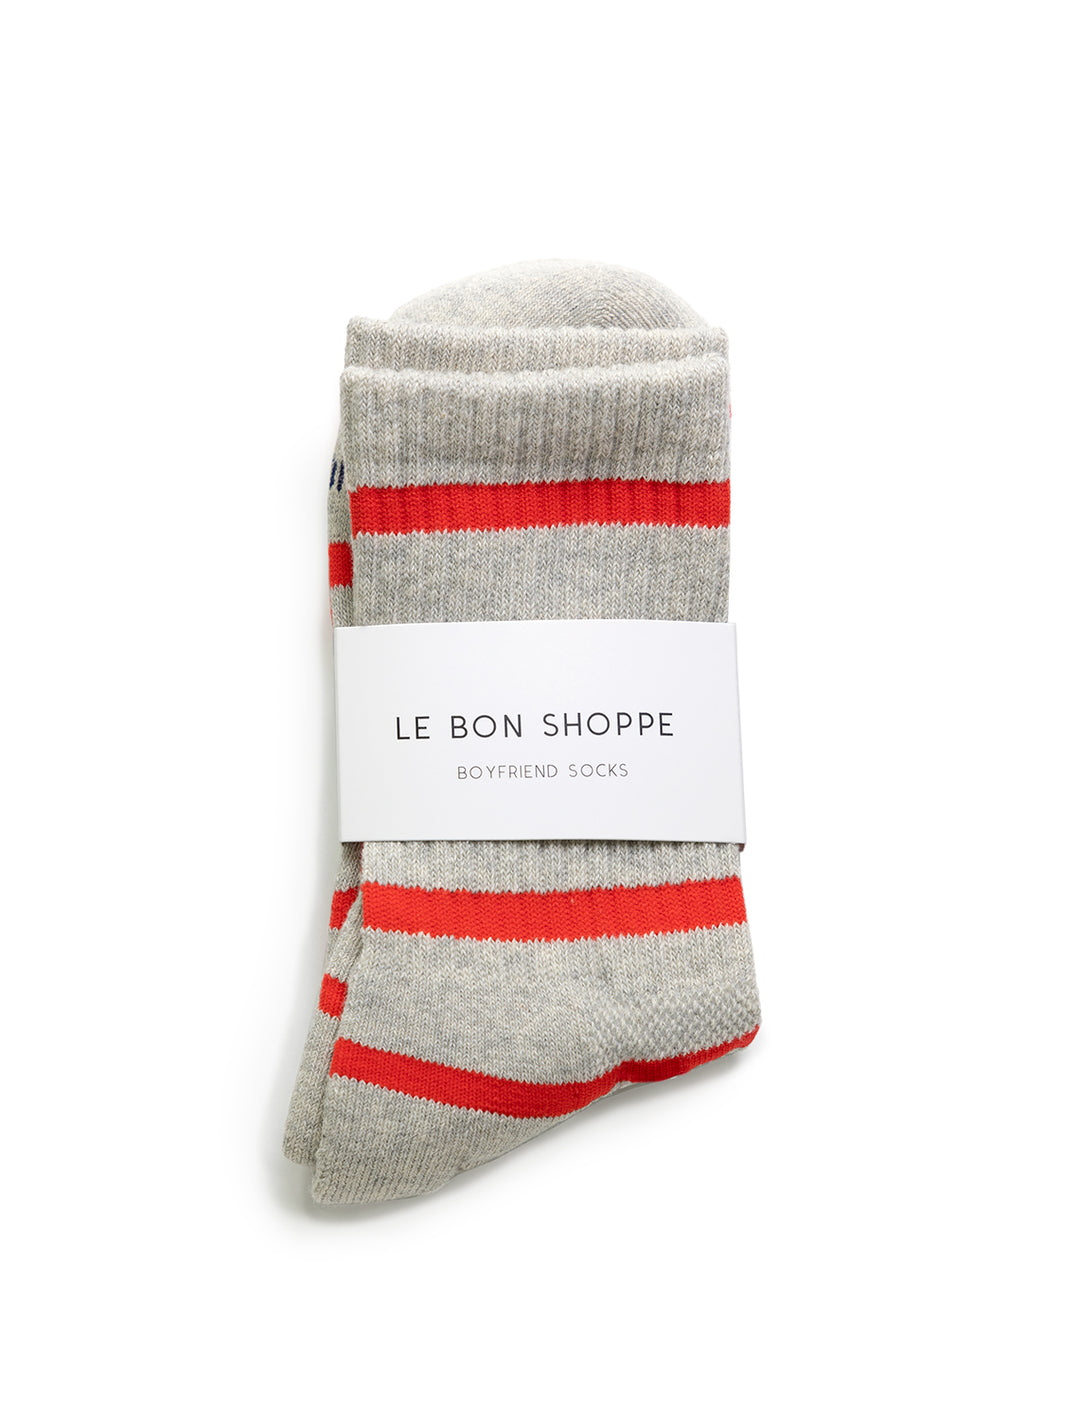 Le Bon Shoppe's striped boyfriend socks in red stripe.